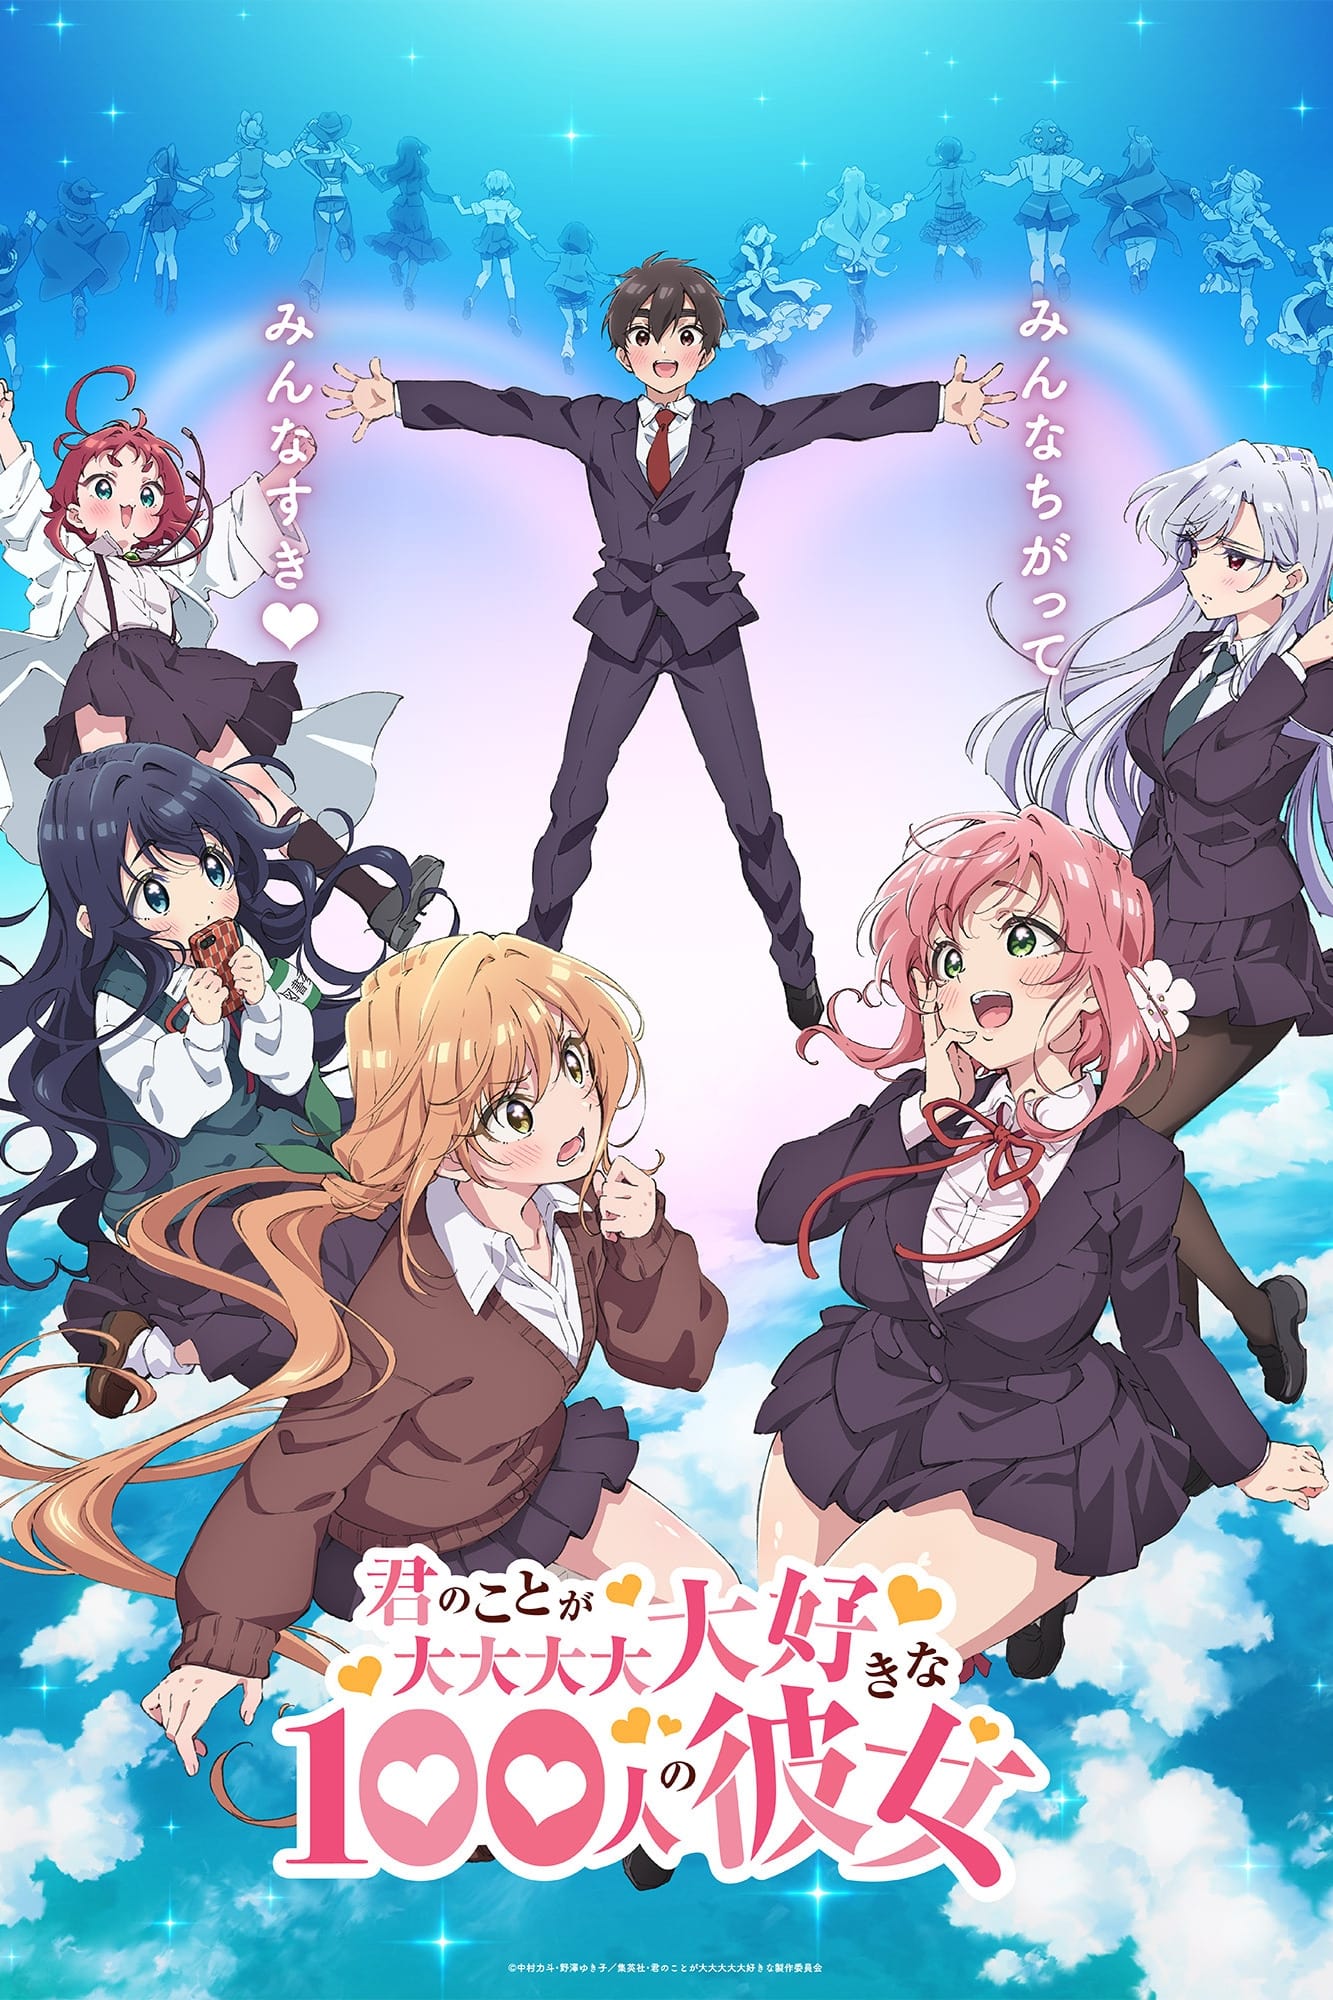 Assistir Tejina-senpai Todos os Episódios Legendado (HD) - Meus Animes  Online